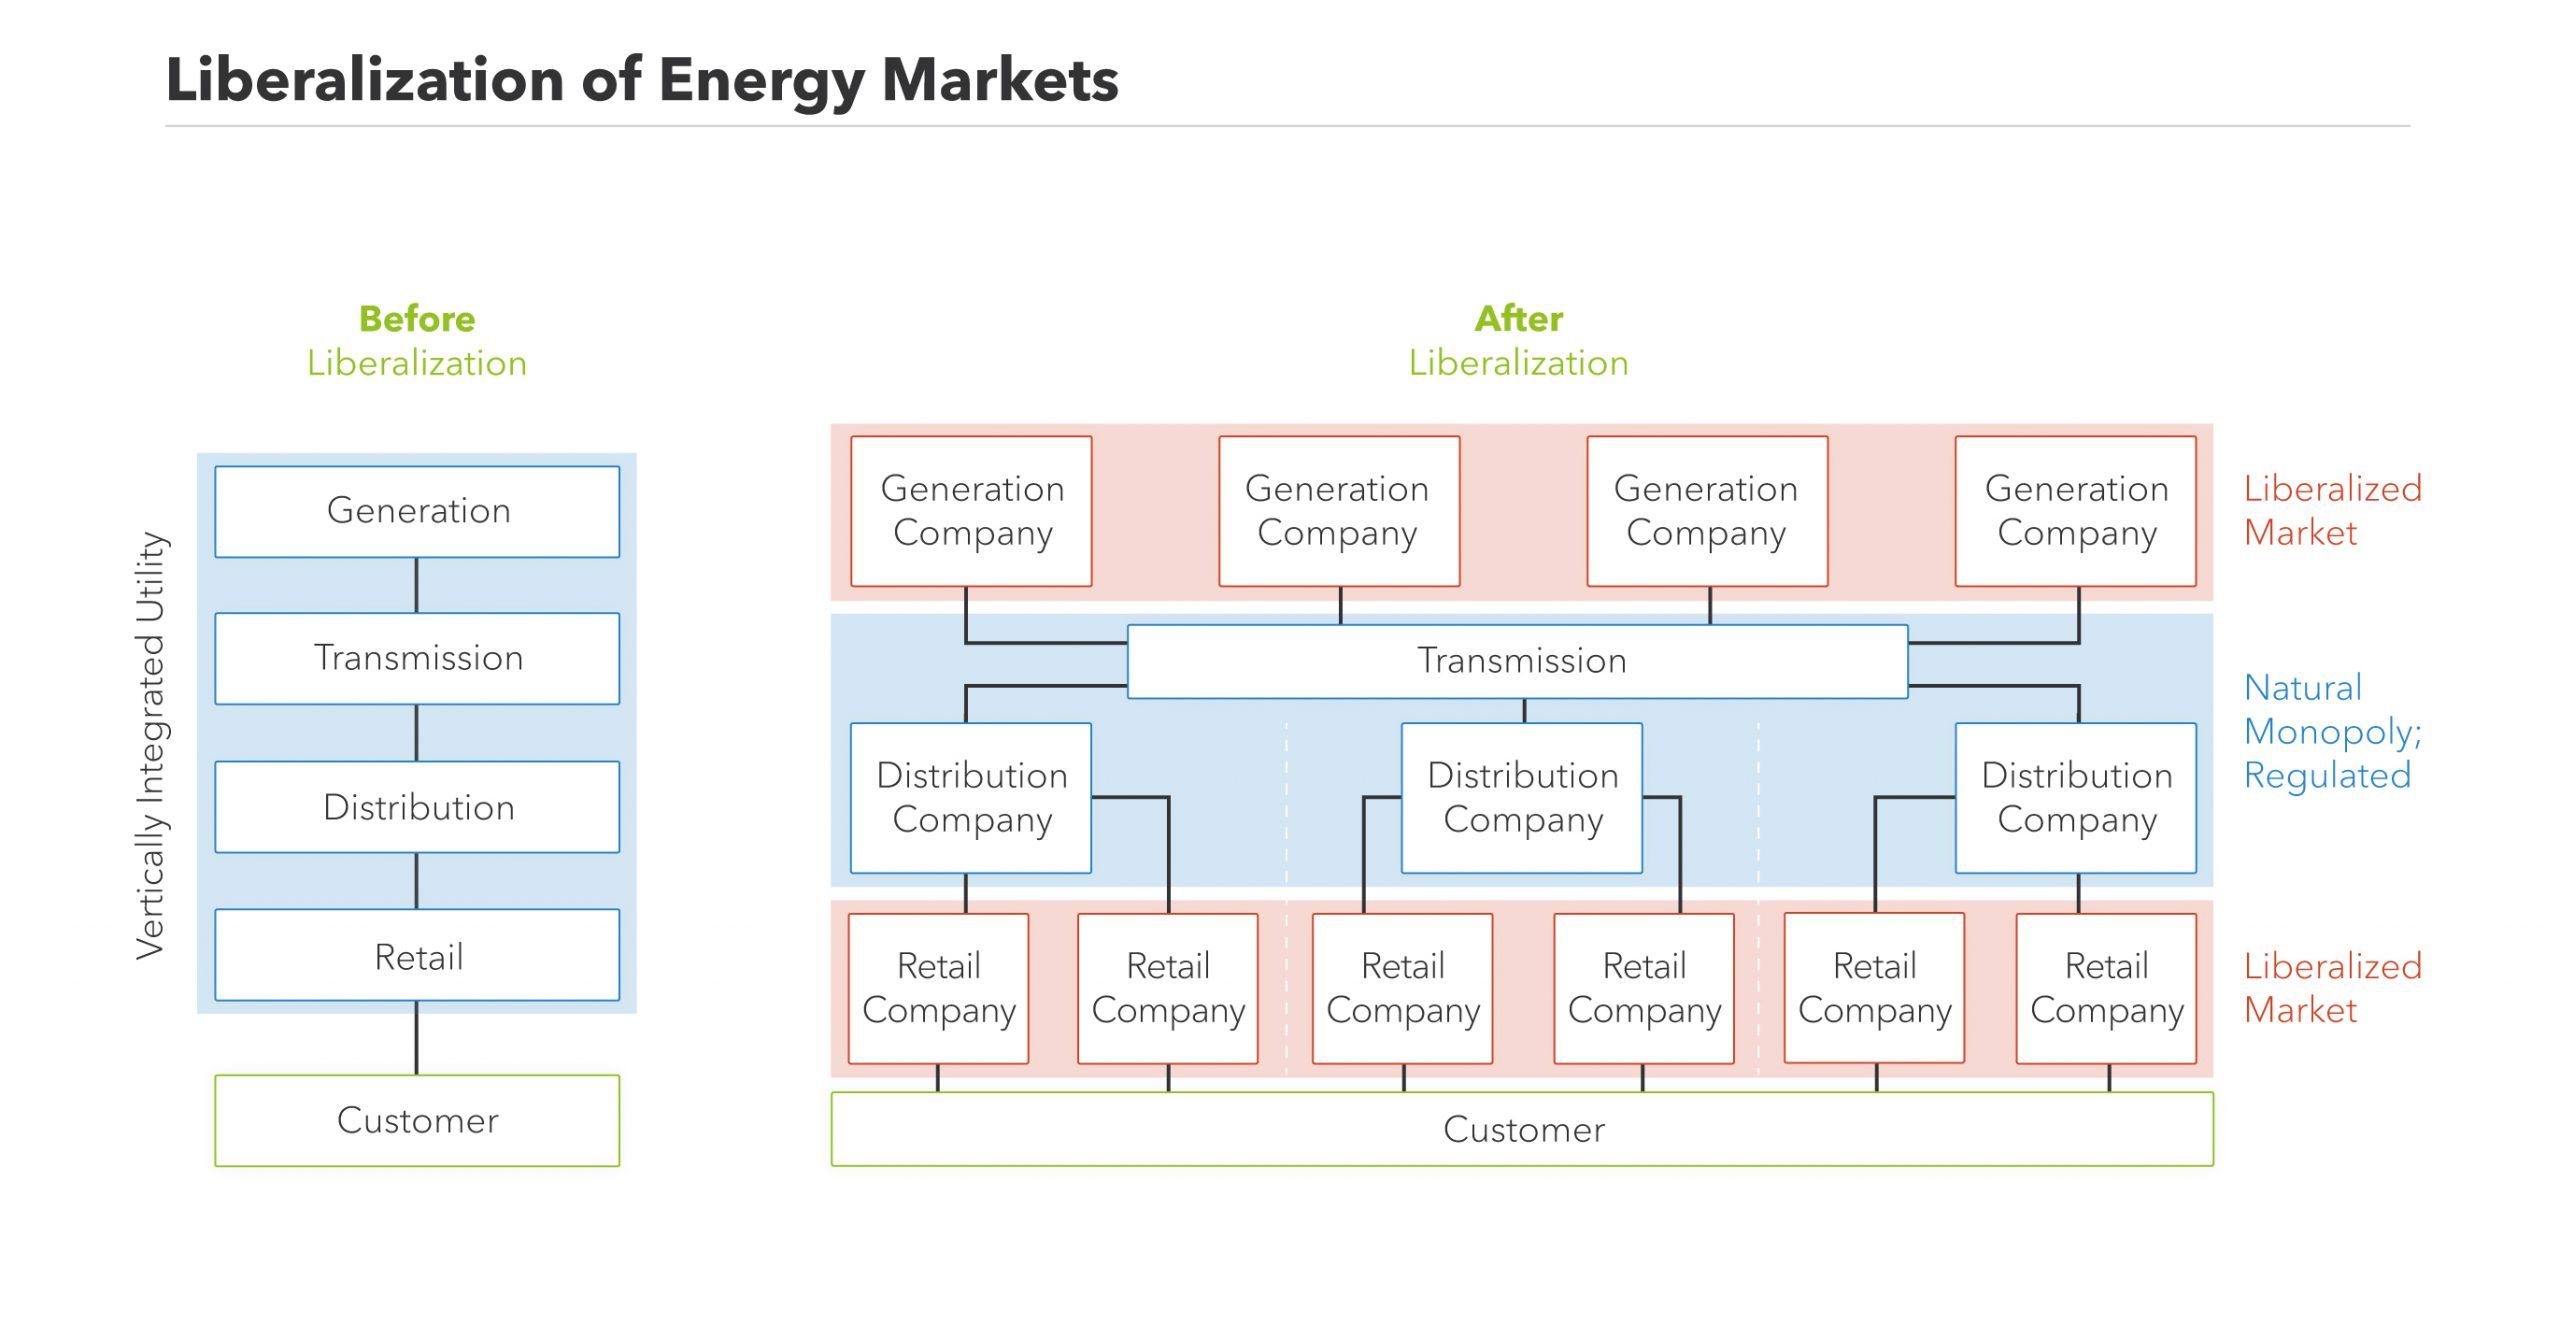 这张图显示了能源市场自由化后发生的变化。